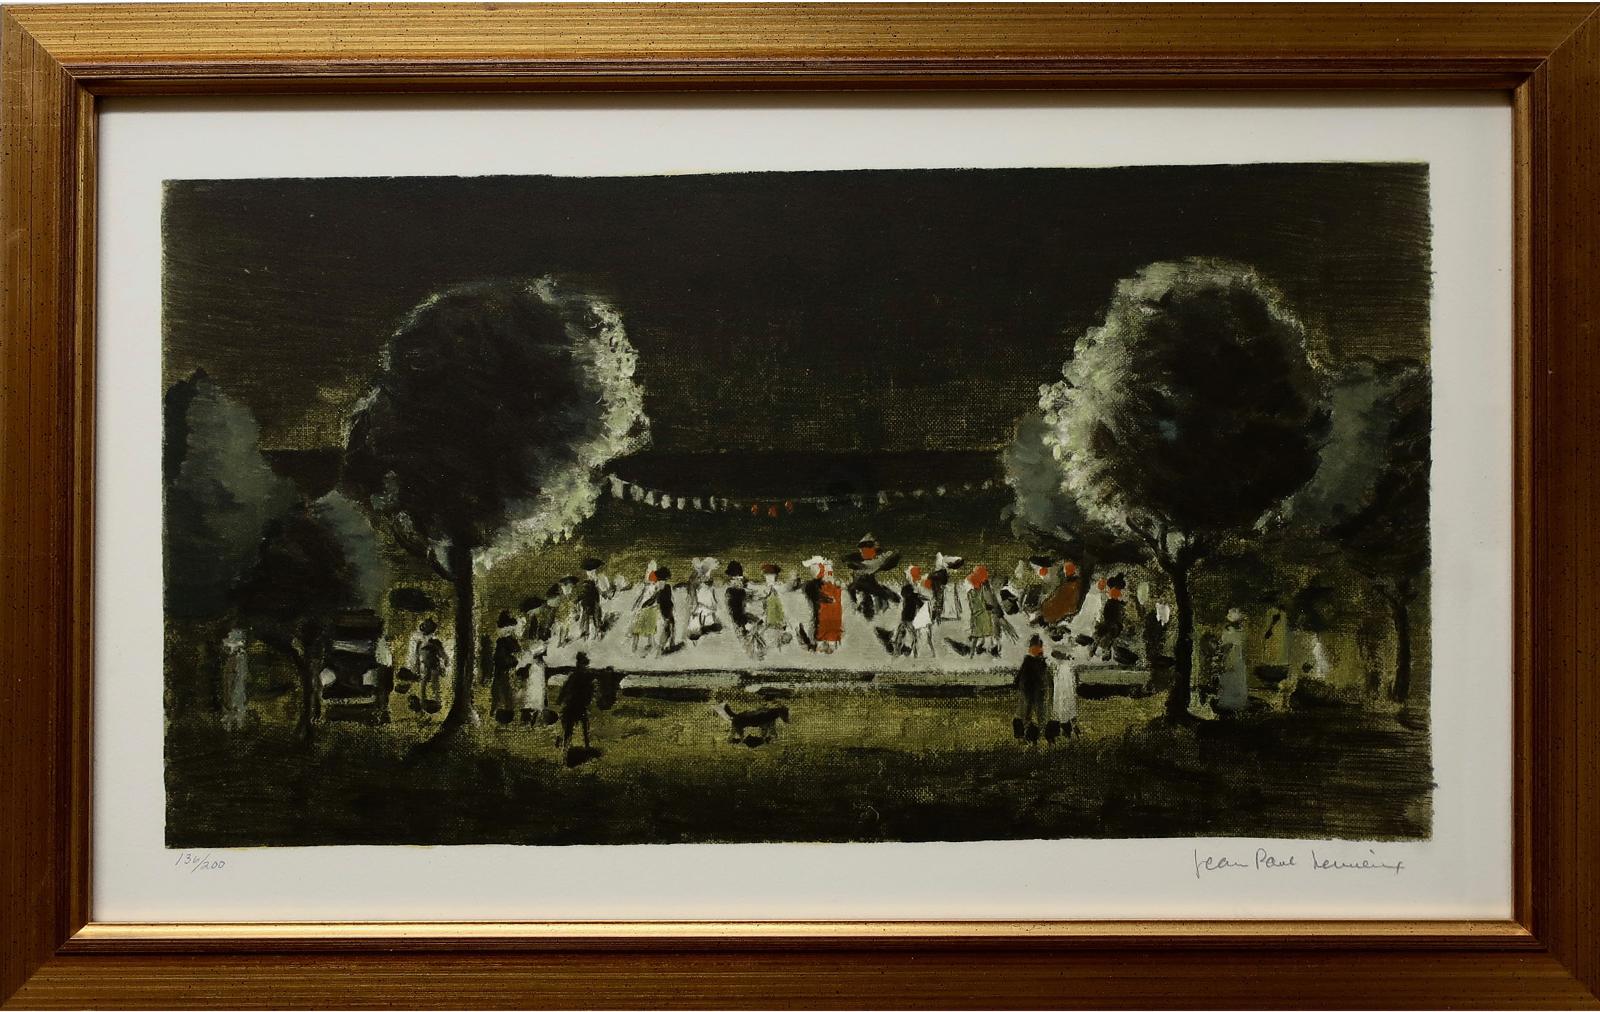 Jean Paul Lemieux (1904-1990) - Untitled - Evening Dance (From The Series La Petite Poule D'eau, 1971)